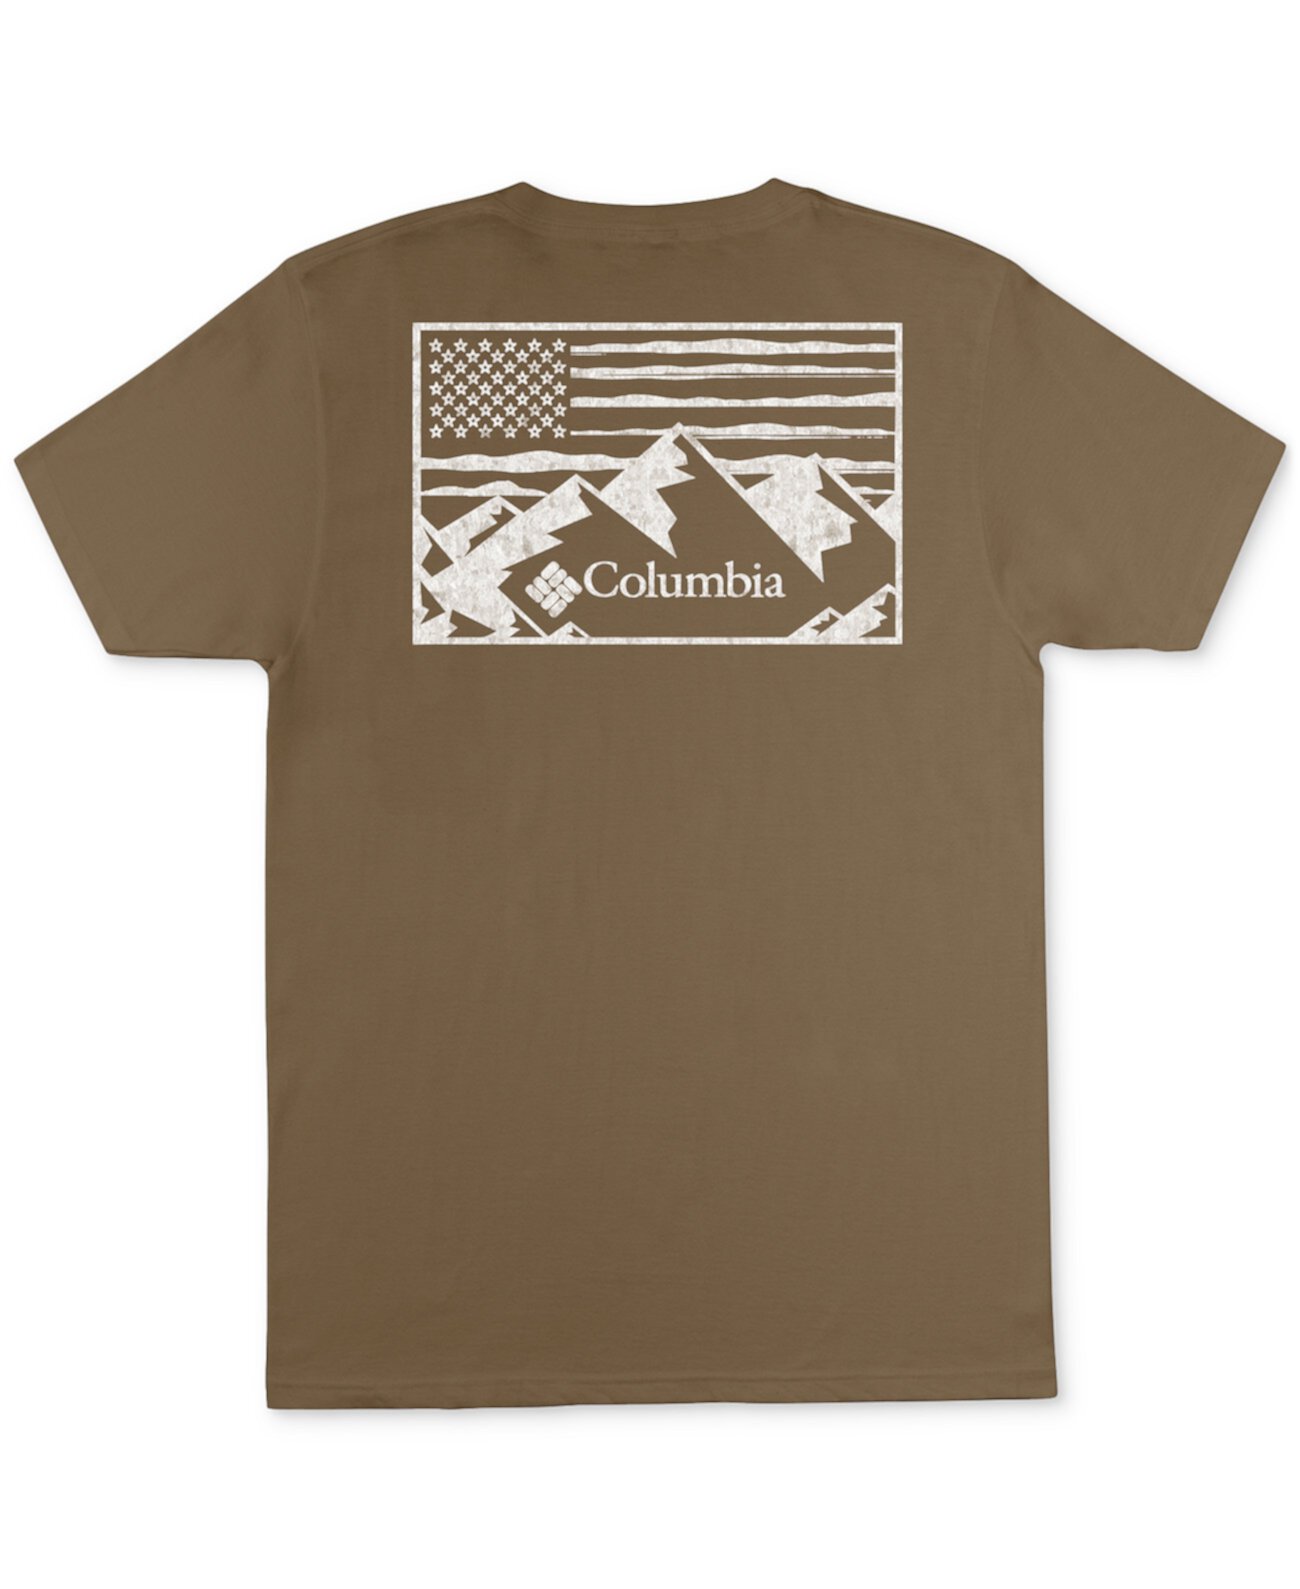 Мужская футболка с графическим логотипом Mountain Majesty Columbia